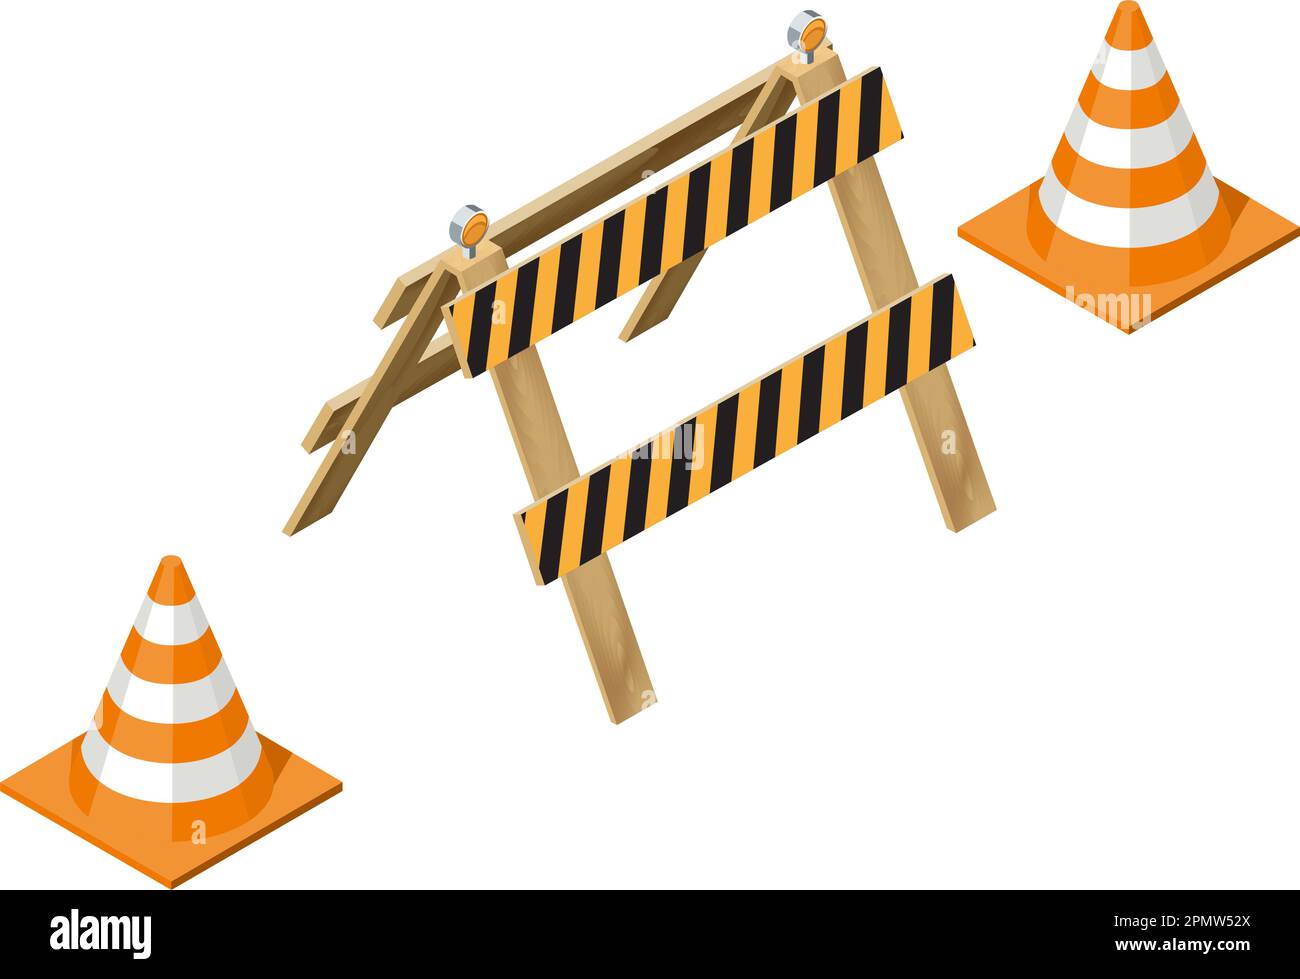 Barriera stradale con disegno vettoriale isometrico a cono. Concetto di recinzione in costruzione isolato su sfondo bianco. Illustrazione Vettoriale